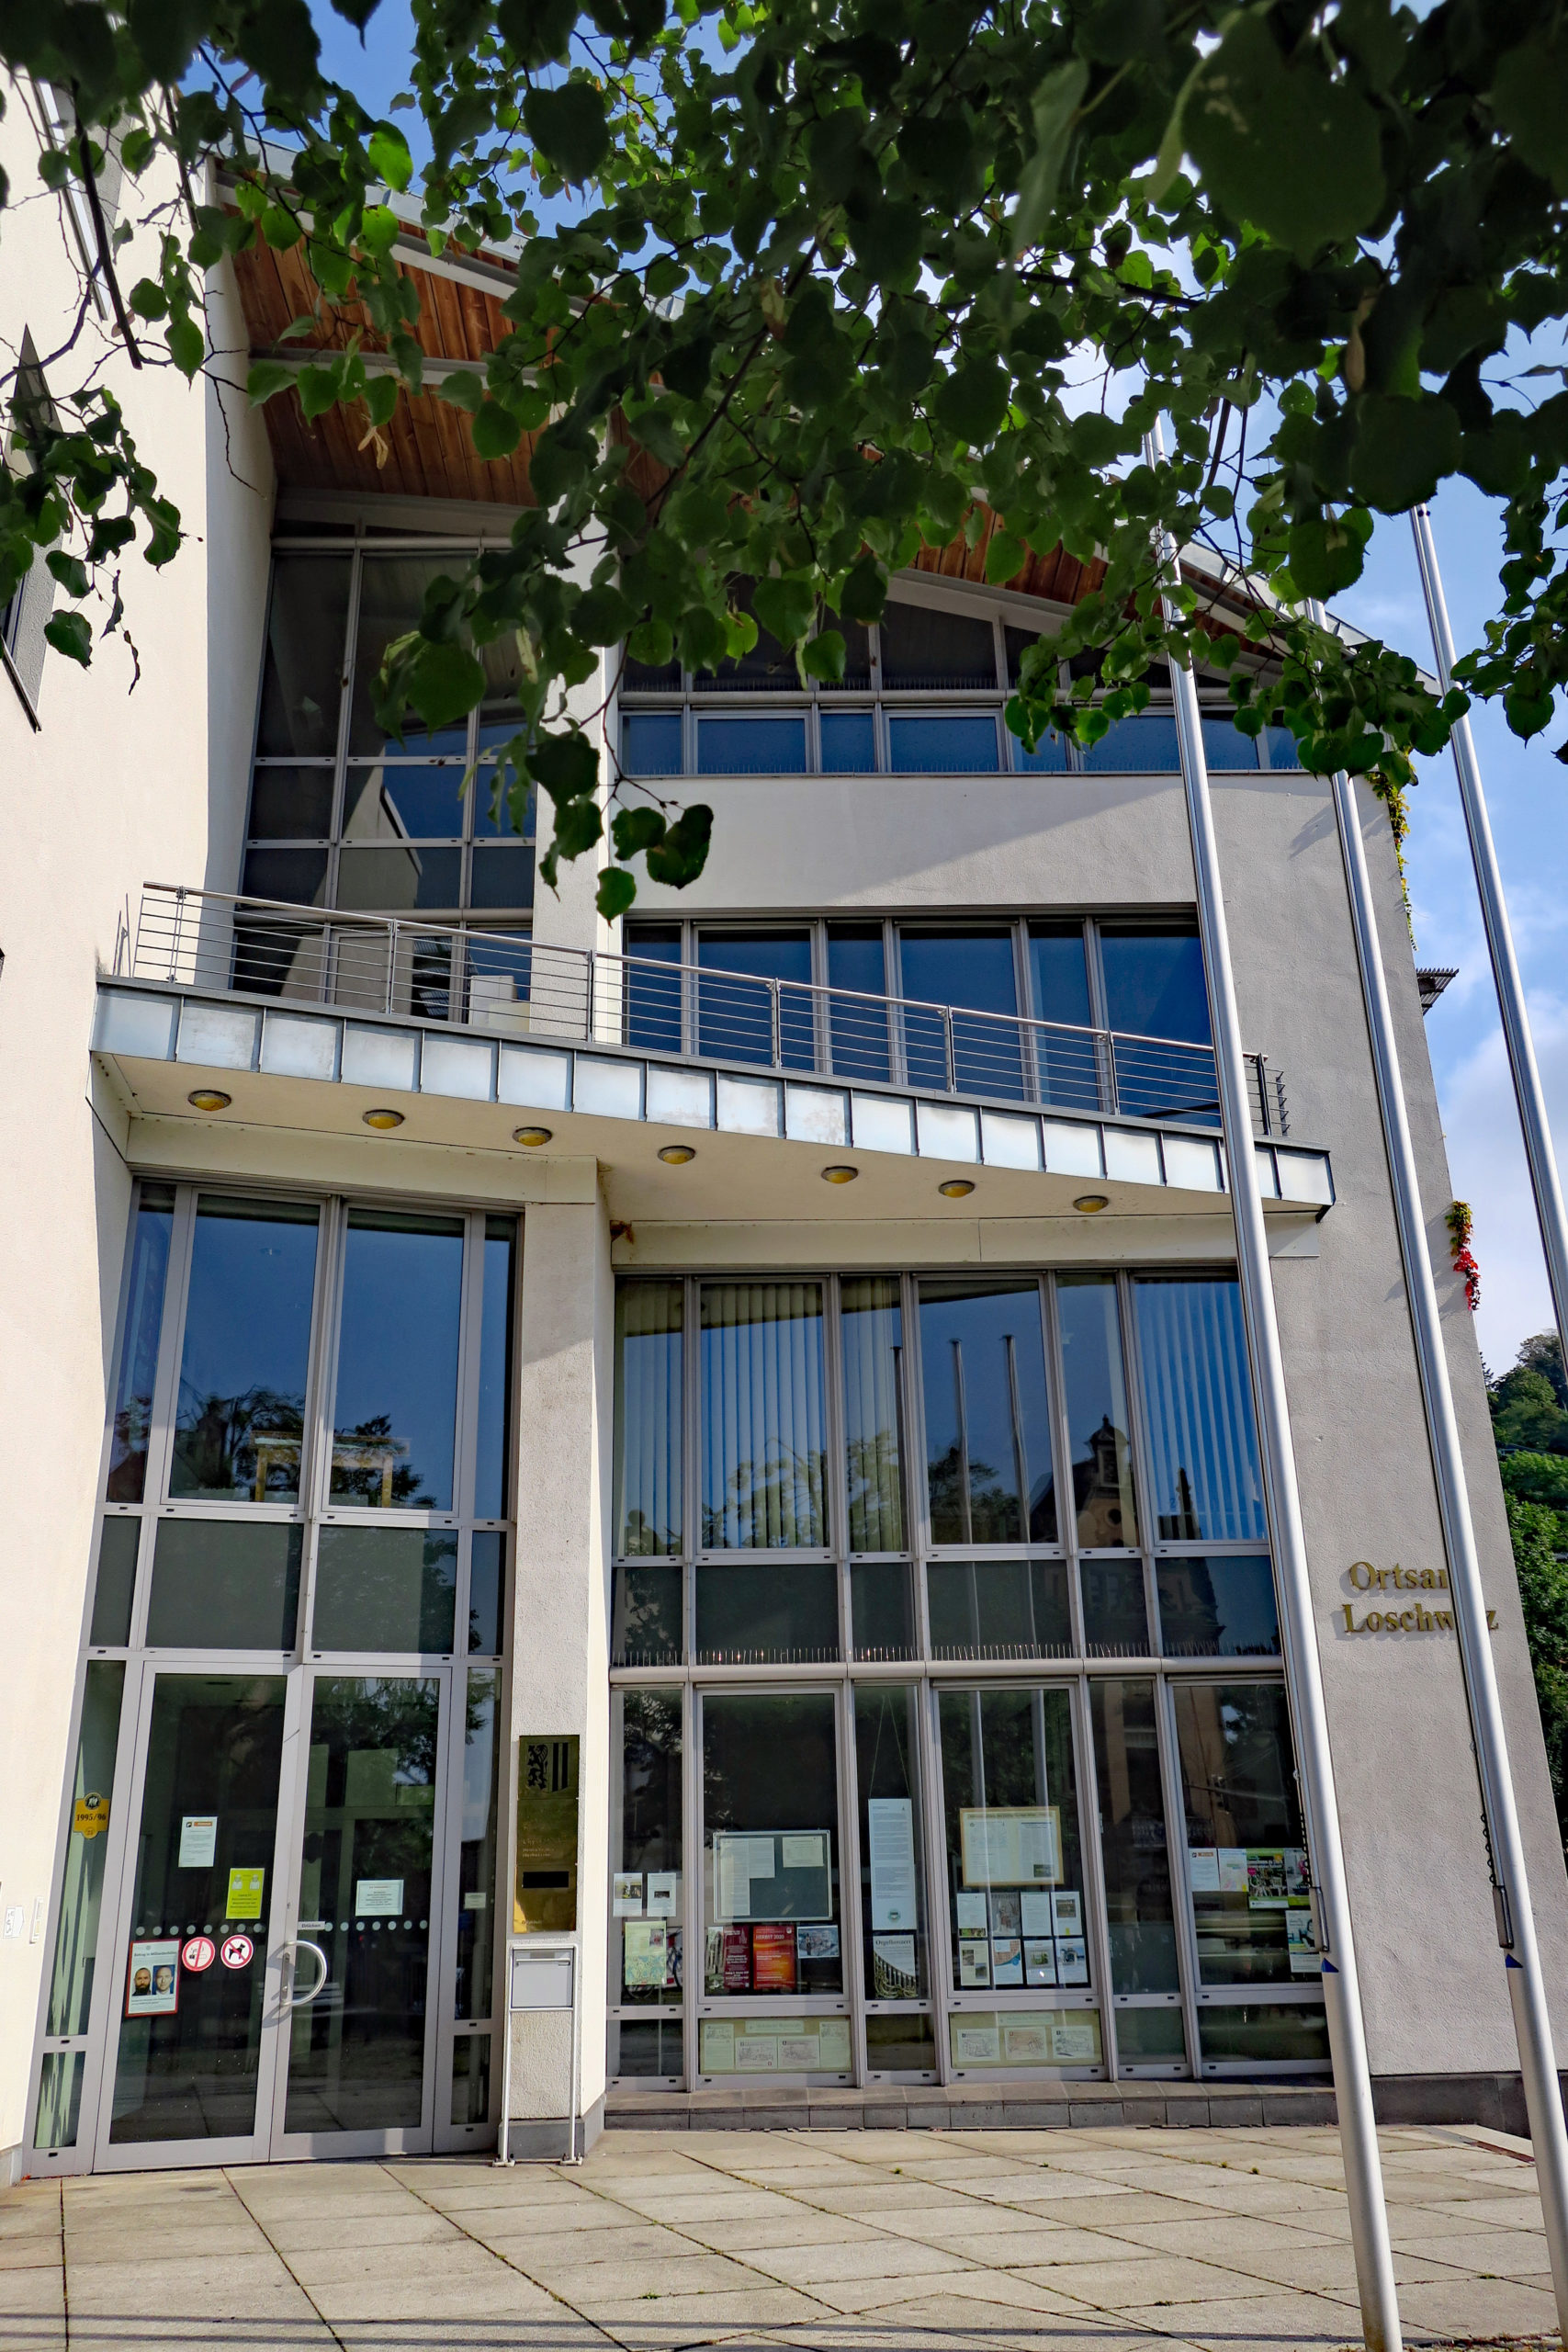 Das Rathaus Dresden Loschwitz ist geprägt von einer großen Glasfront, in der sich die gegenüberliegenden Gebäude und der blaue Himmel spiegeln. Auf dem Vorplatz sind quadratische Steinplatten verlegt, auf der rechten Seite stehen drei Fahnenmasten und vom oberen Bildrand ragen Lindenblätter in das Bild.